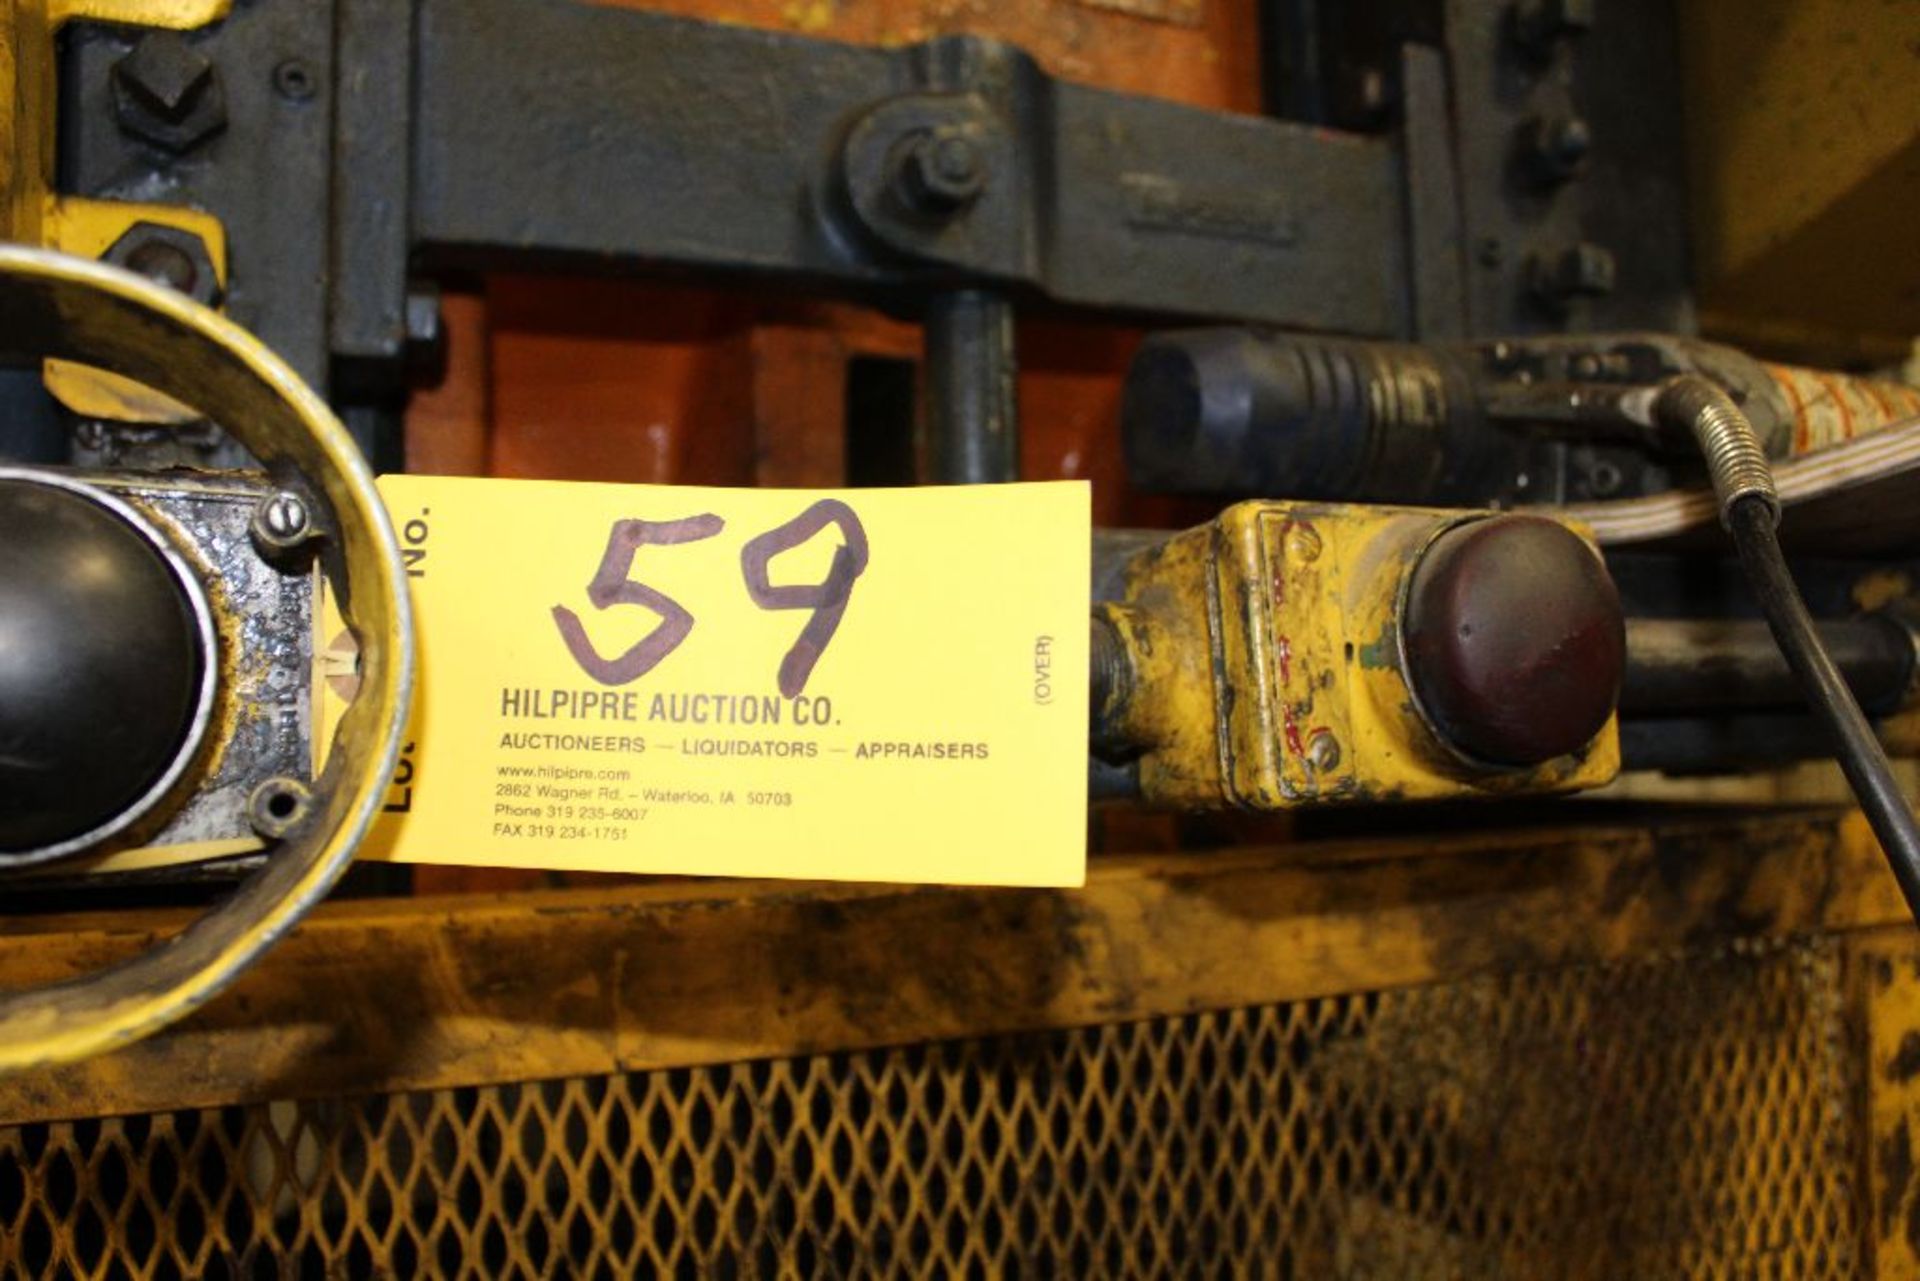 Minster OBI press, model 8, sn 8-8107, 95 T. - Image 2 of 6